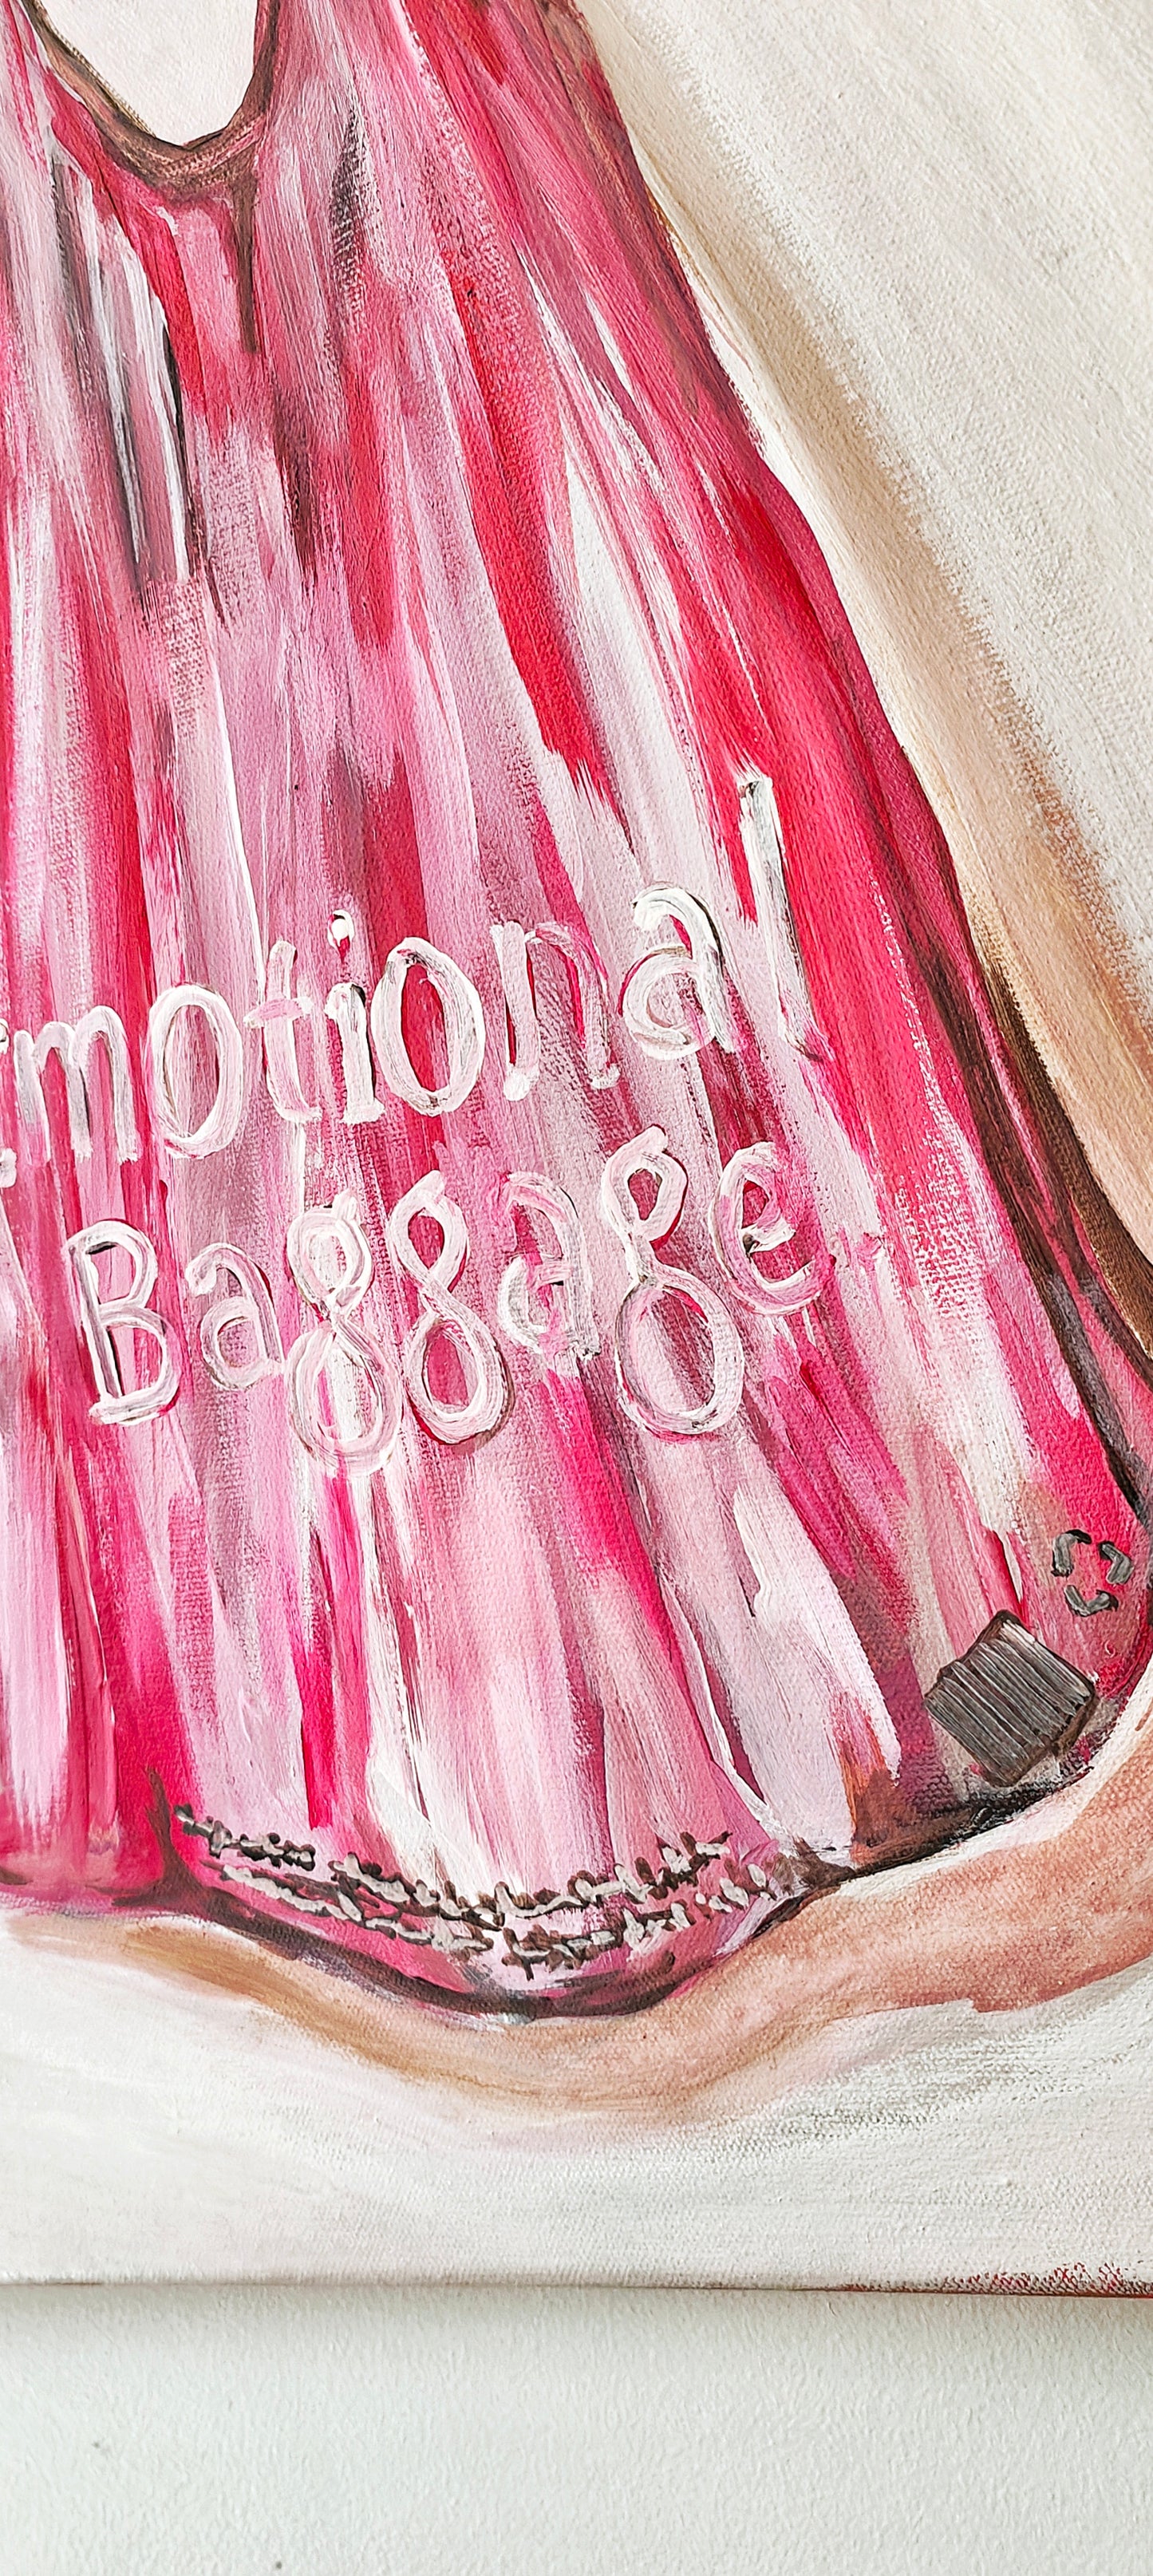 "Emotional Baggage" - Original Artwork